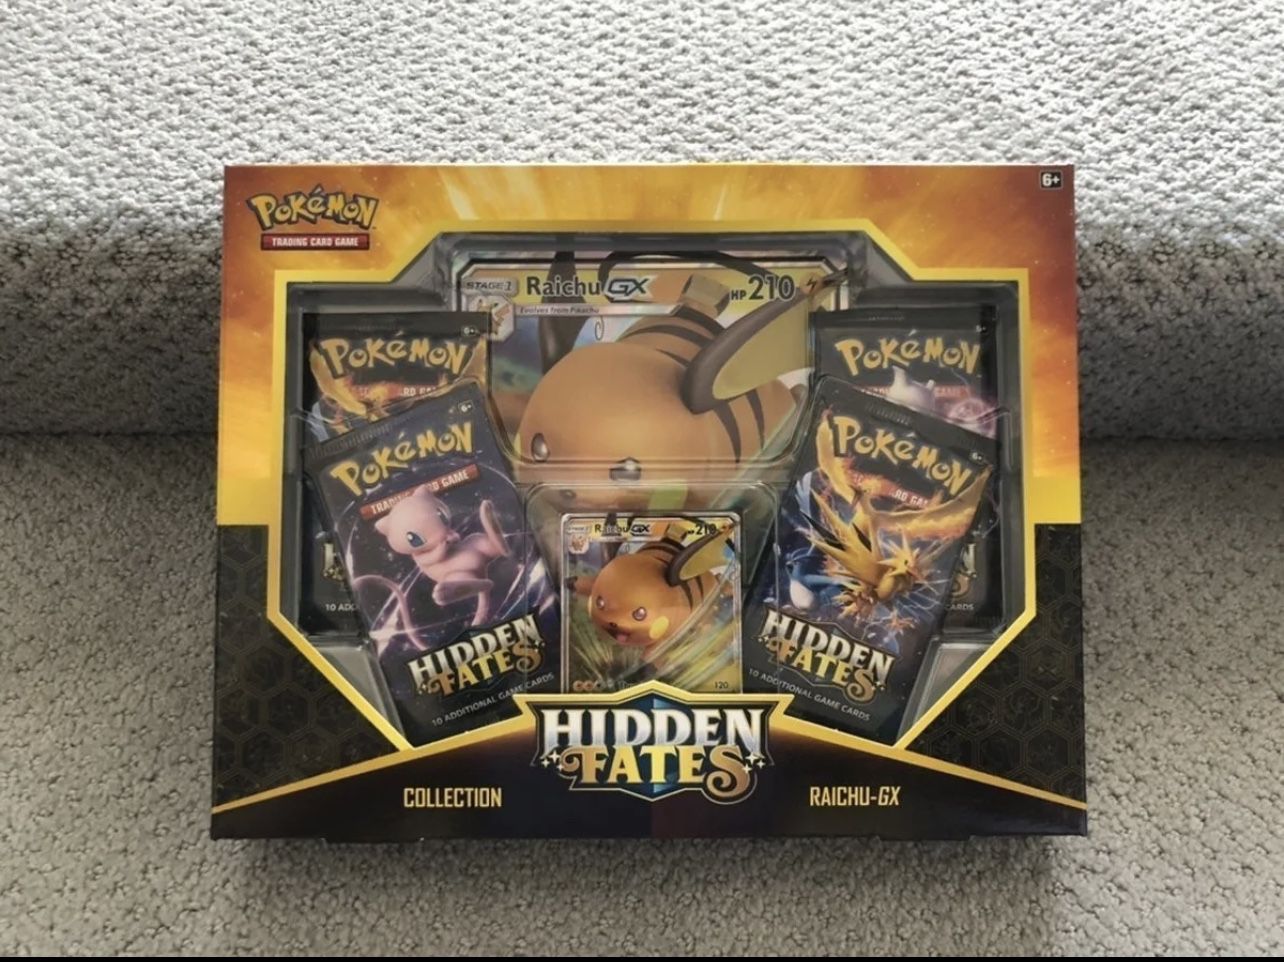 Hidden Fates Pokemon Raichu - GX Sealed